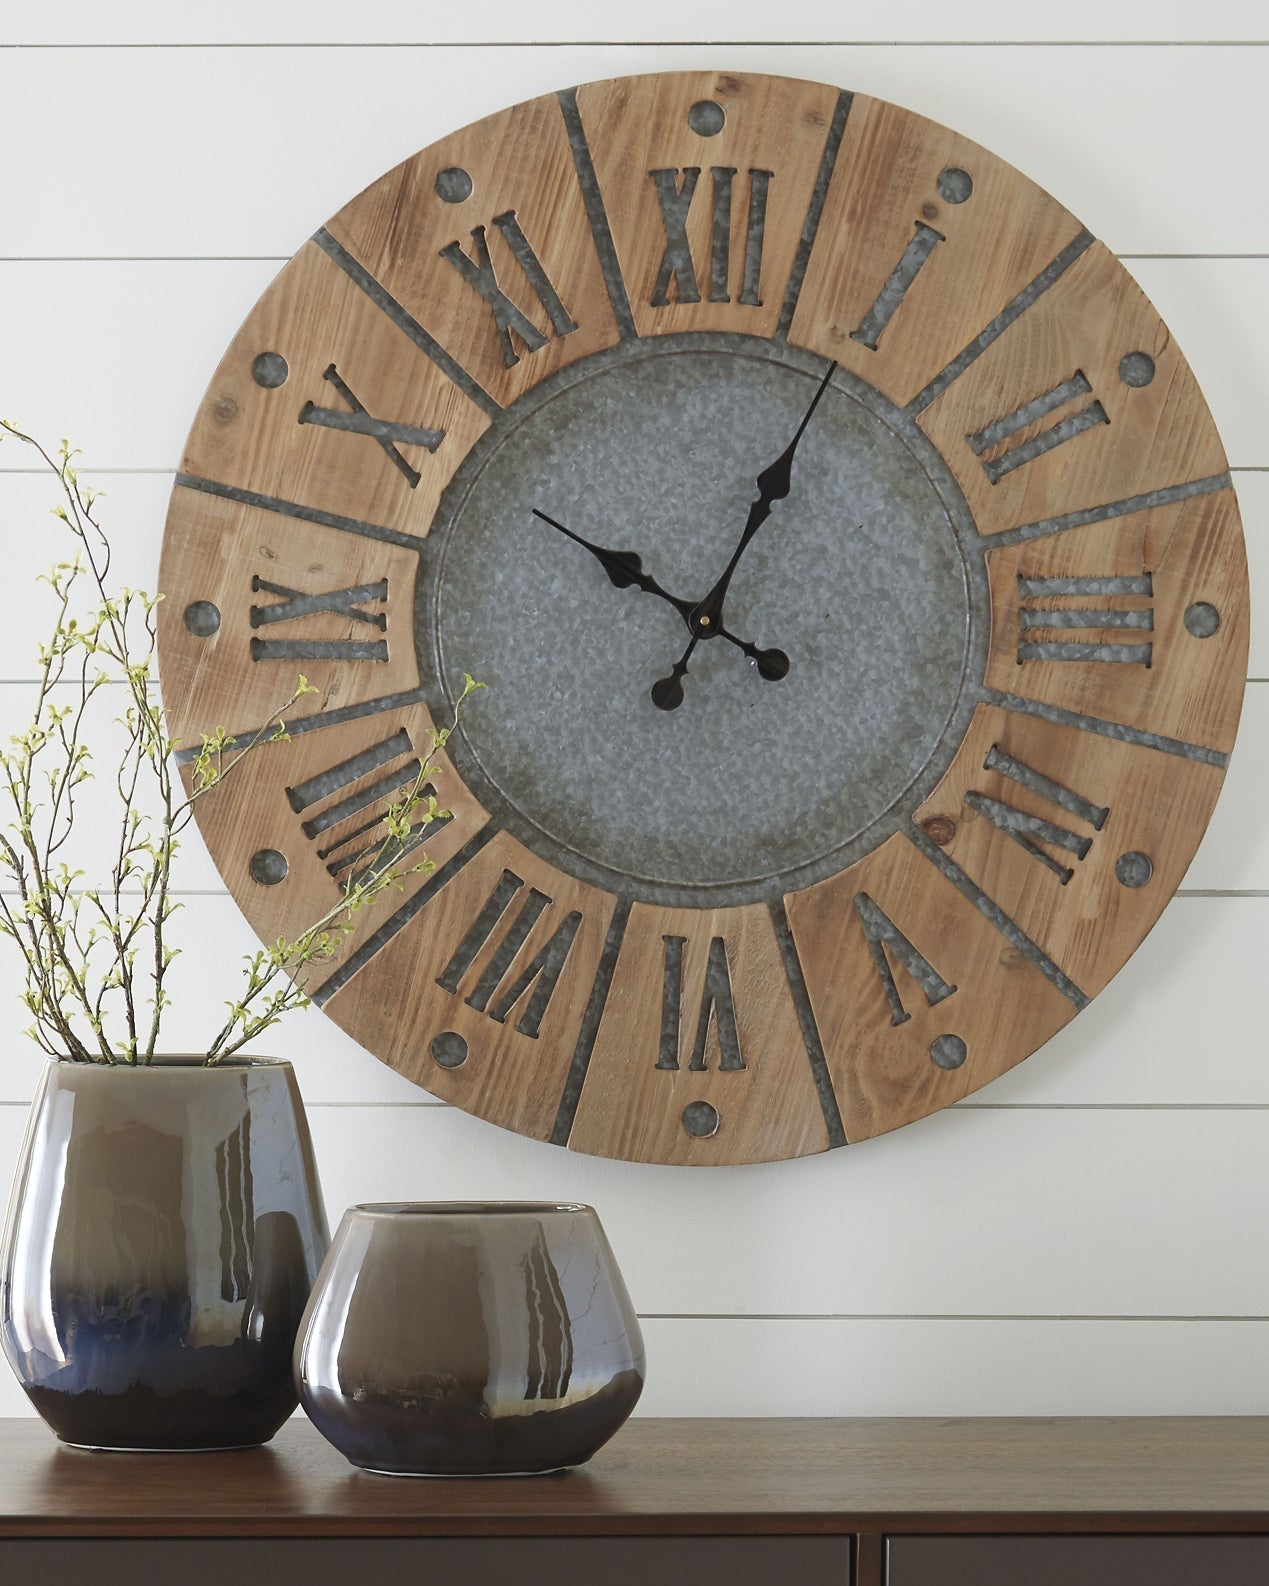 Ashley Express - Payson Wall Clock at Towne & Country Furniture (AL) furniture, home furniture, home decor, sofa, bedding